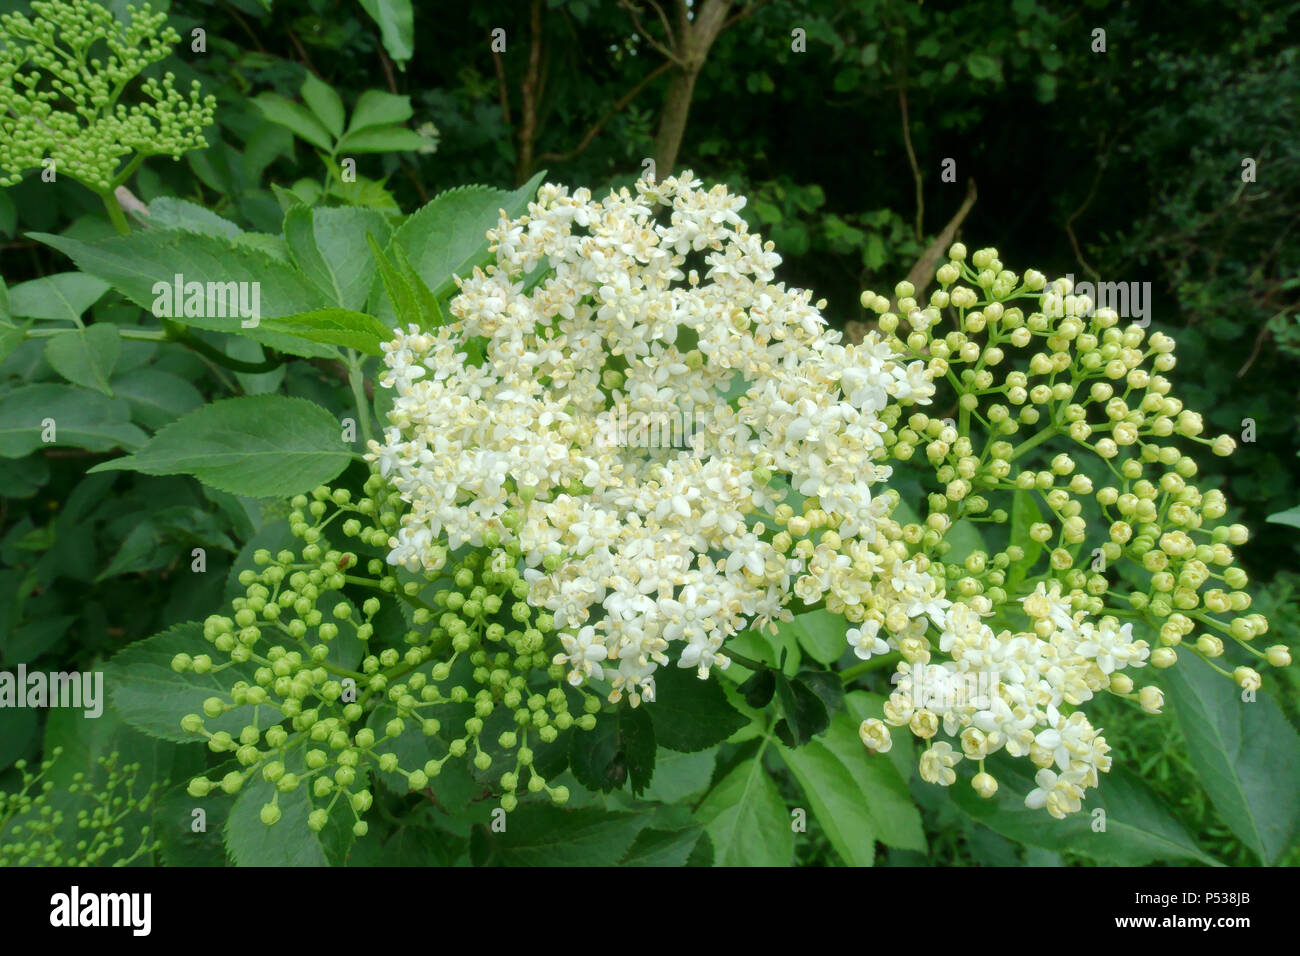 Elderberry, Sambucus nigra, blanca flor de saúco corymb junto con corymbs de yemas sin abrir, puede Foto de stock